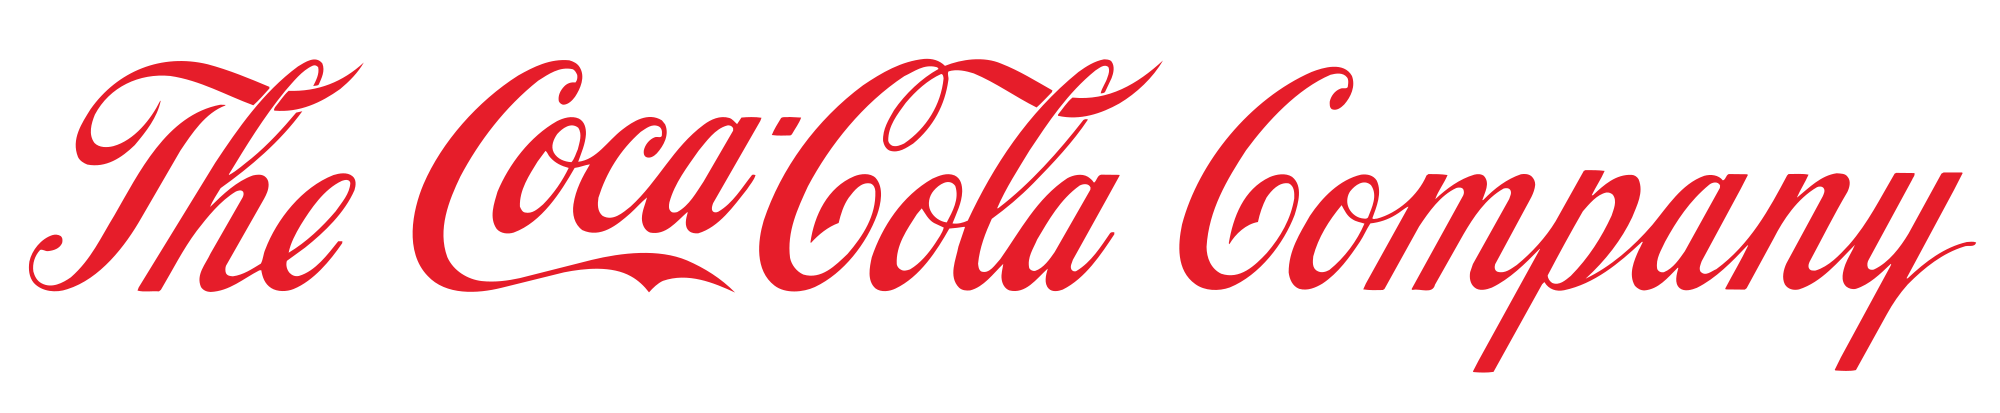 Cocola Logo - Coca Cola logo PNG image free download